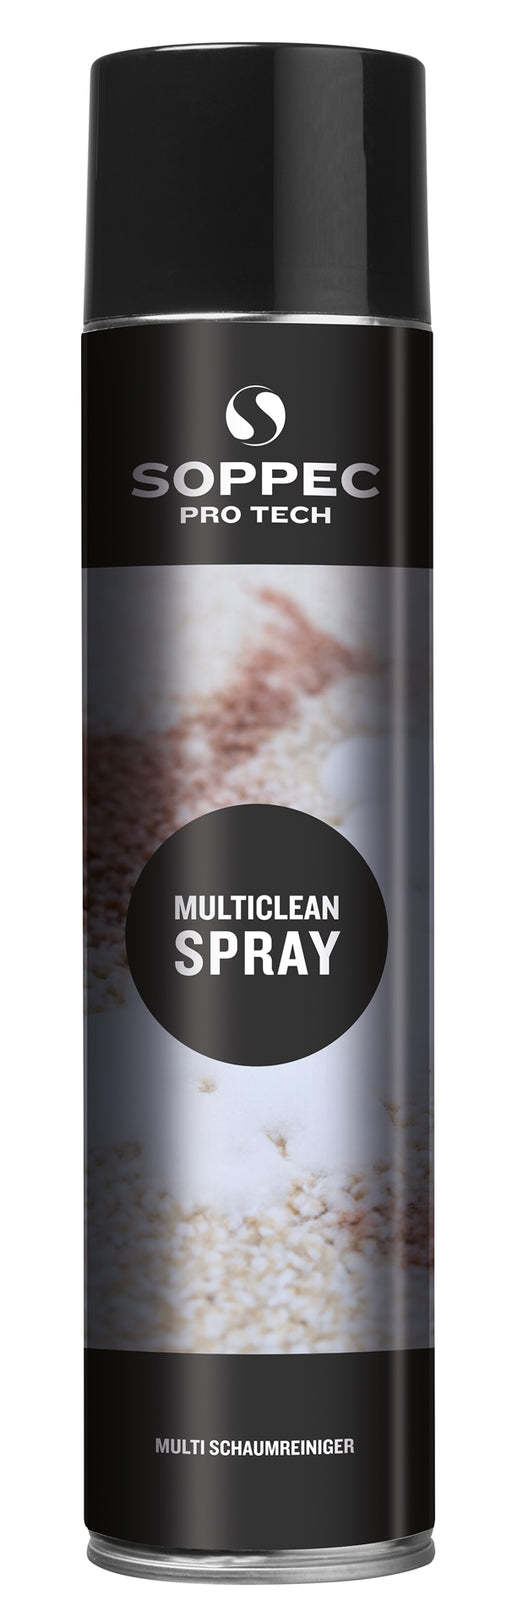 Soppec Multirengjøring Spray 600ml | Soppec | Kjemi og rengjøring, Kjemikaler, Soppec